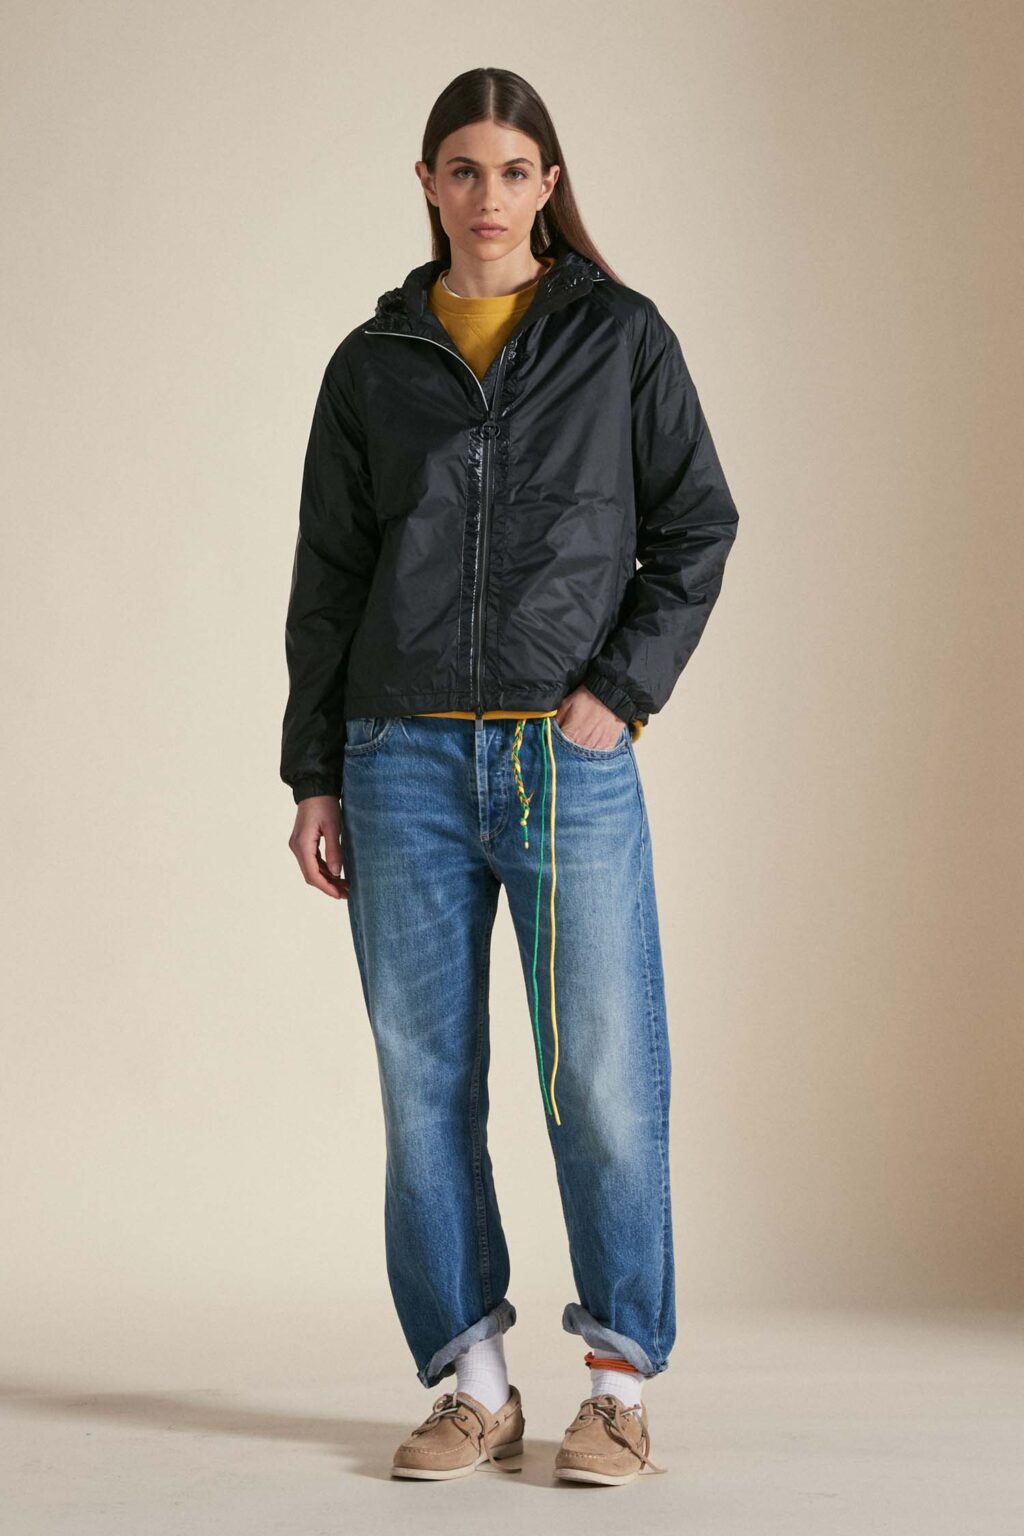 Ciesse piumini capospalla donna
ROSA – Windbreaker nero con cappuccio ripiegabile, realizzato in nylon matt con trattamento anti goccia